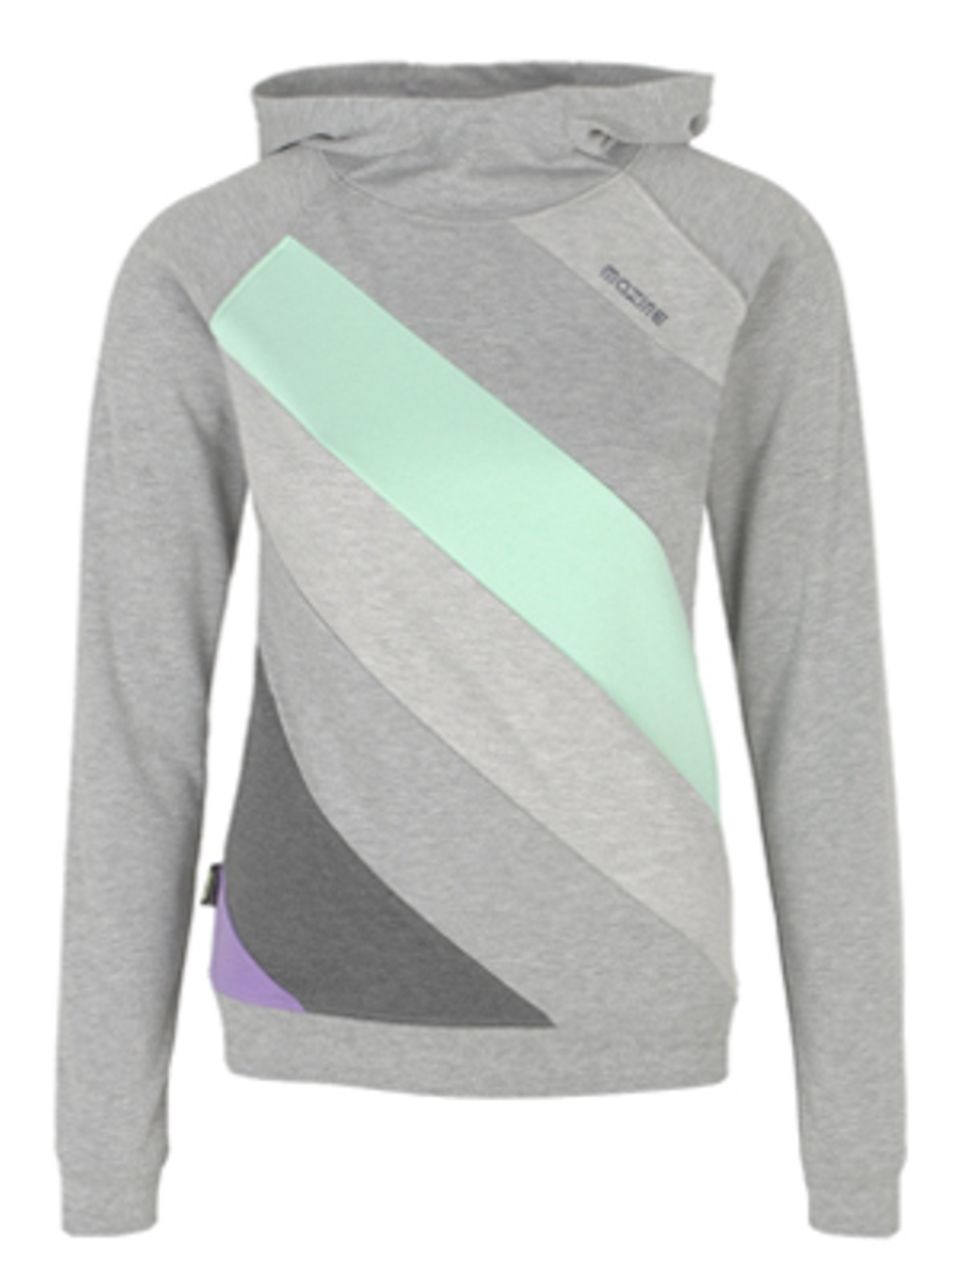 Für Kuschel-Atmosphäre vor, während oder nach dem Sport eignet sich dieser Sweater von Mazine, um 60 Euro.